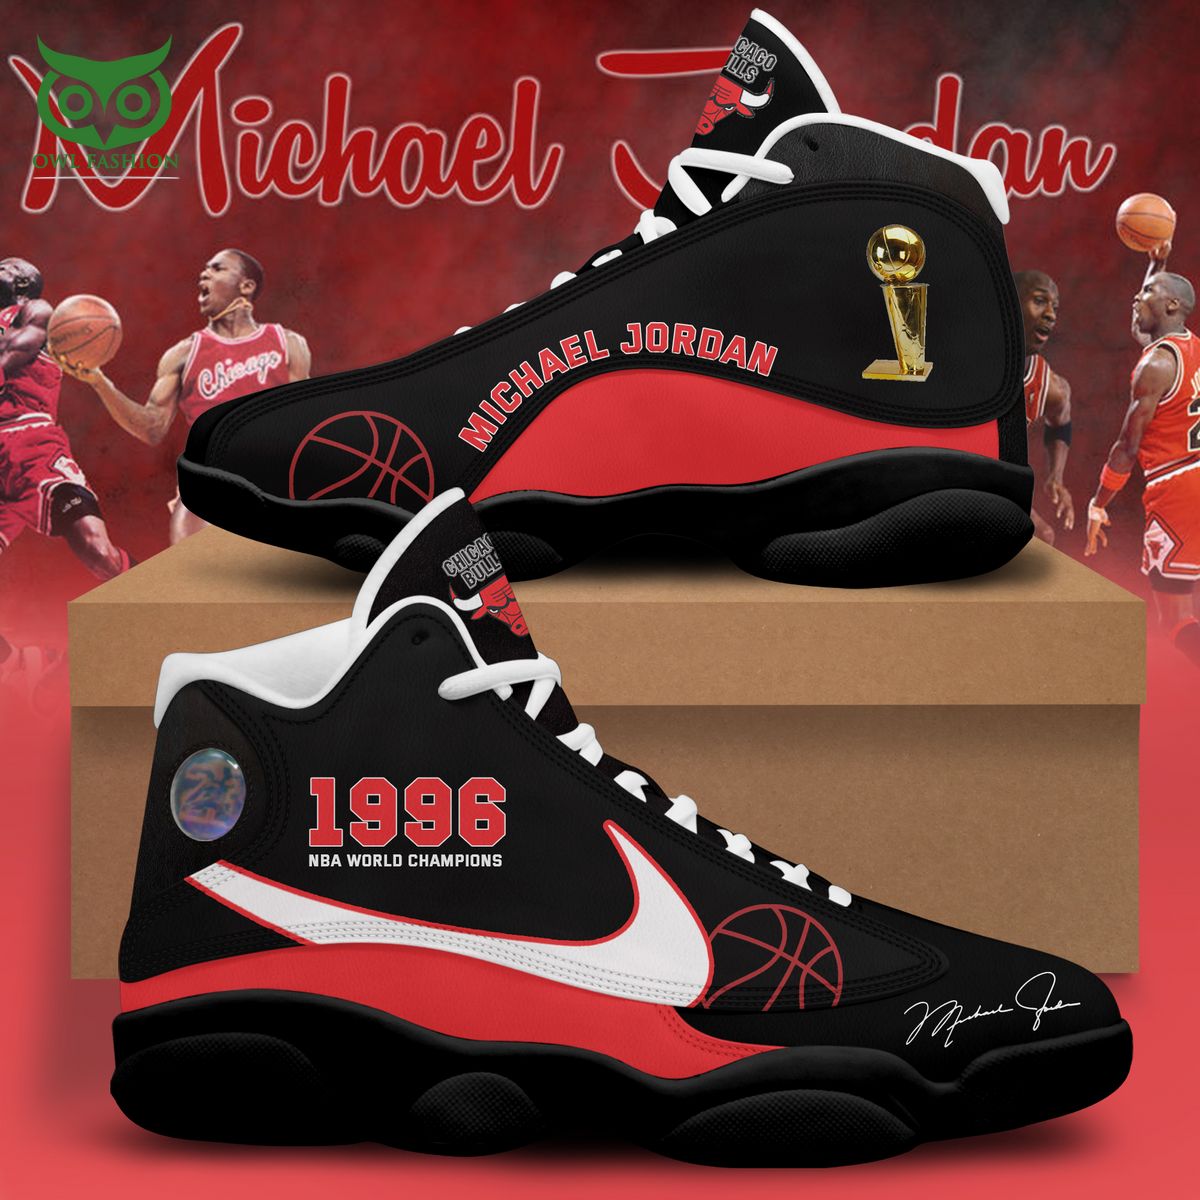 Michael Jordan 1996 World Champtions Nike Air Jordan 13 Royal Pic of yours